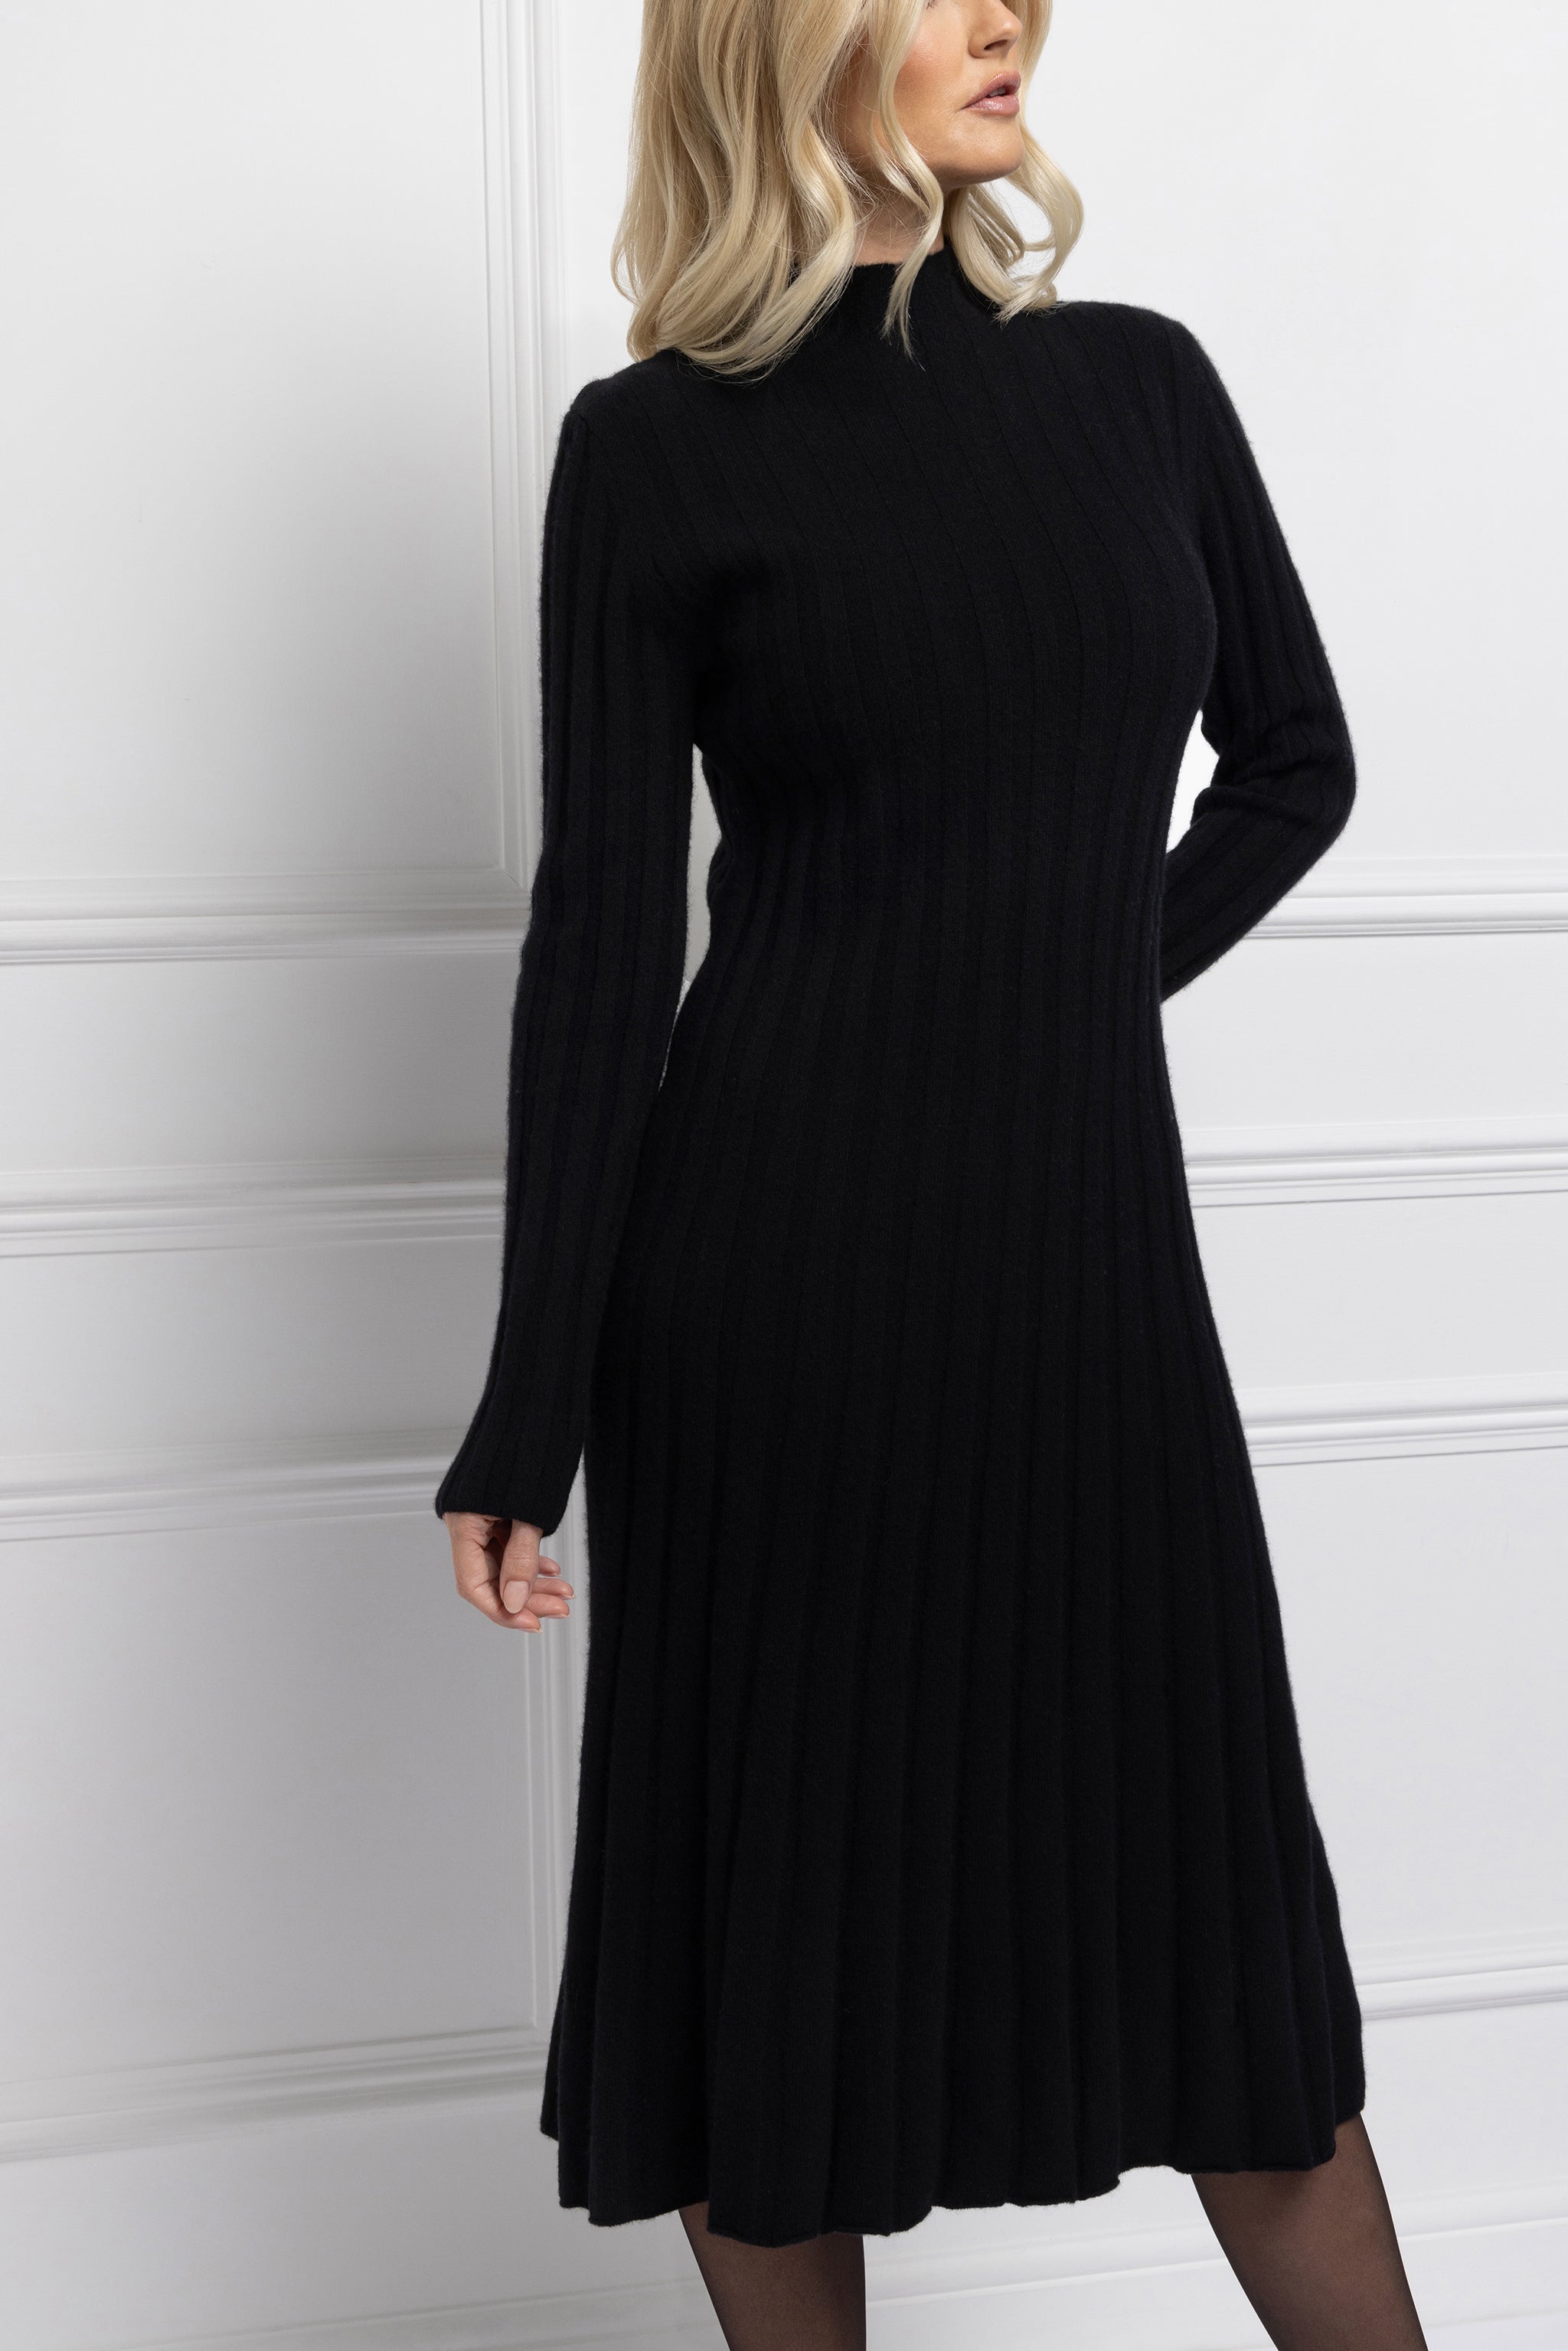 Pleat Knit Midi Dress (Black)